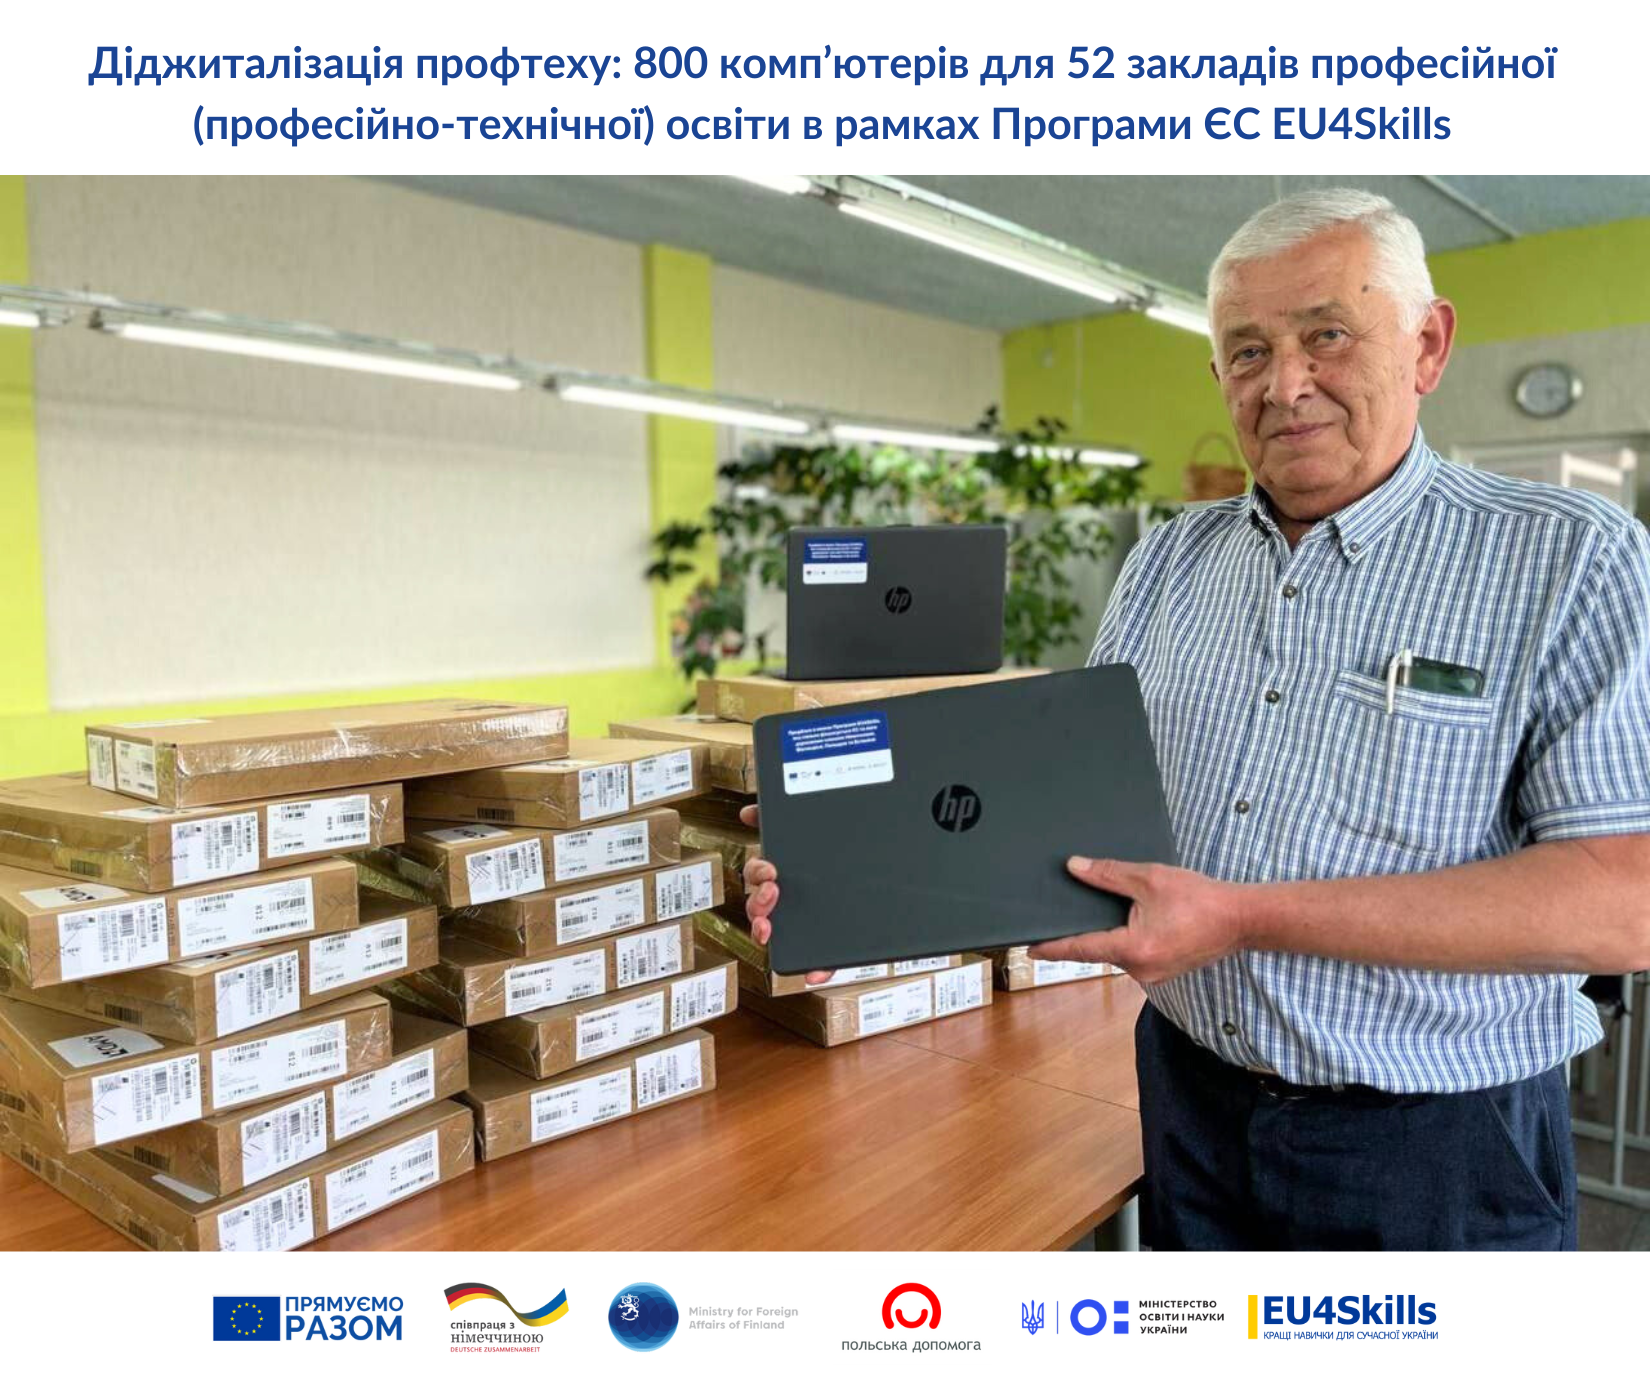 Фонд міжнародної солідарності (республіка Польща) закупив 800 ноутбуків в рамках програми EU4Skills для підтримки профосвіти в Україні.